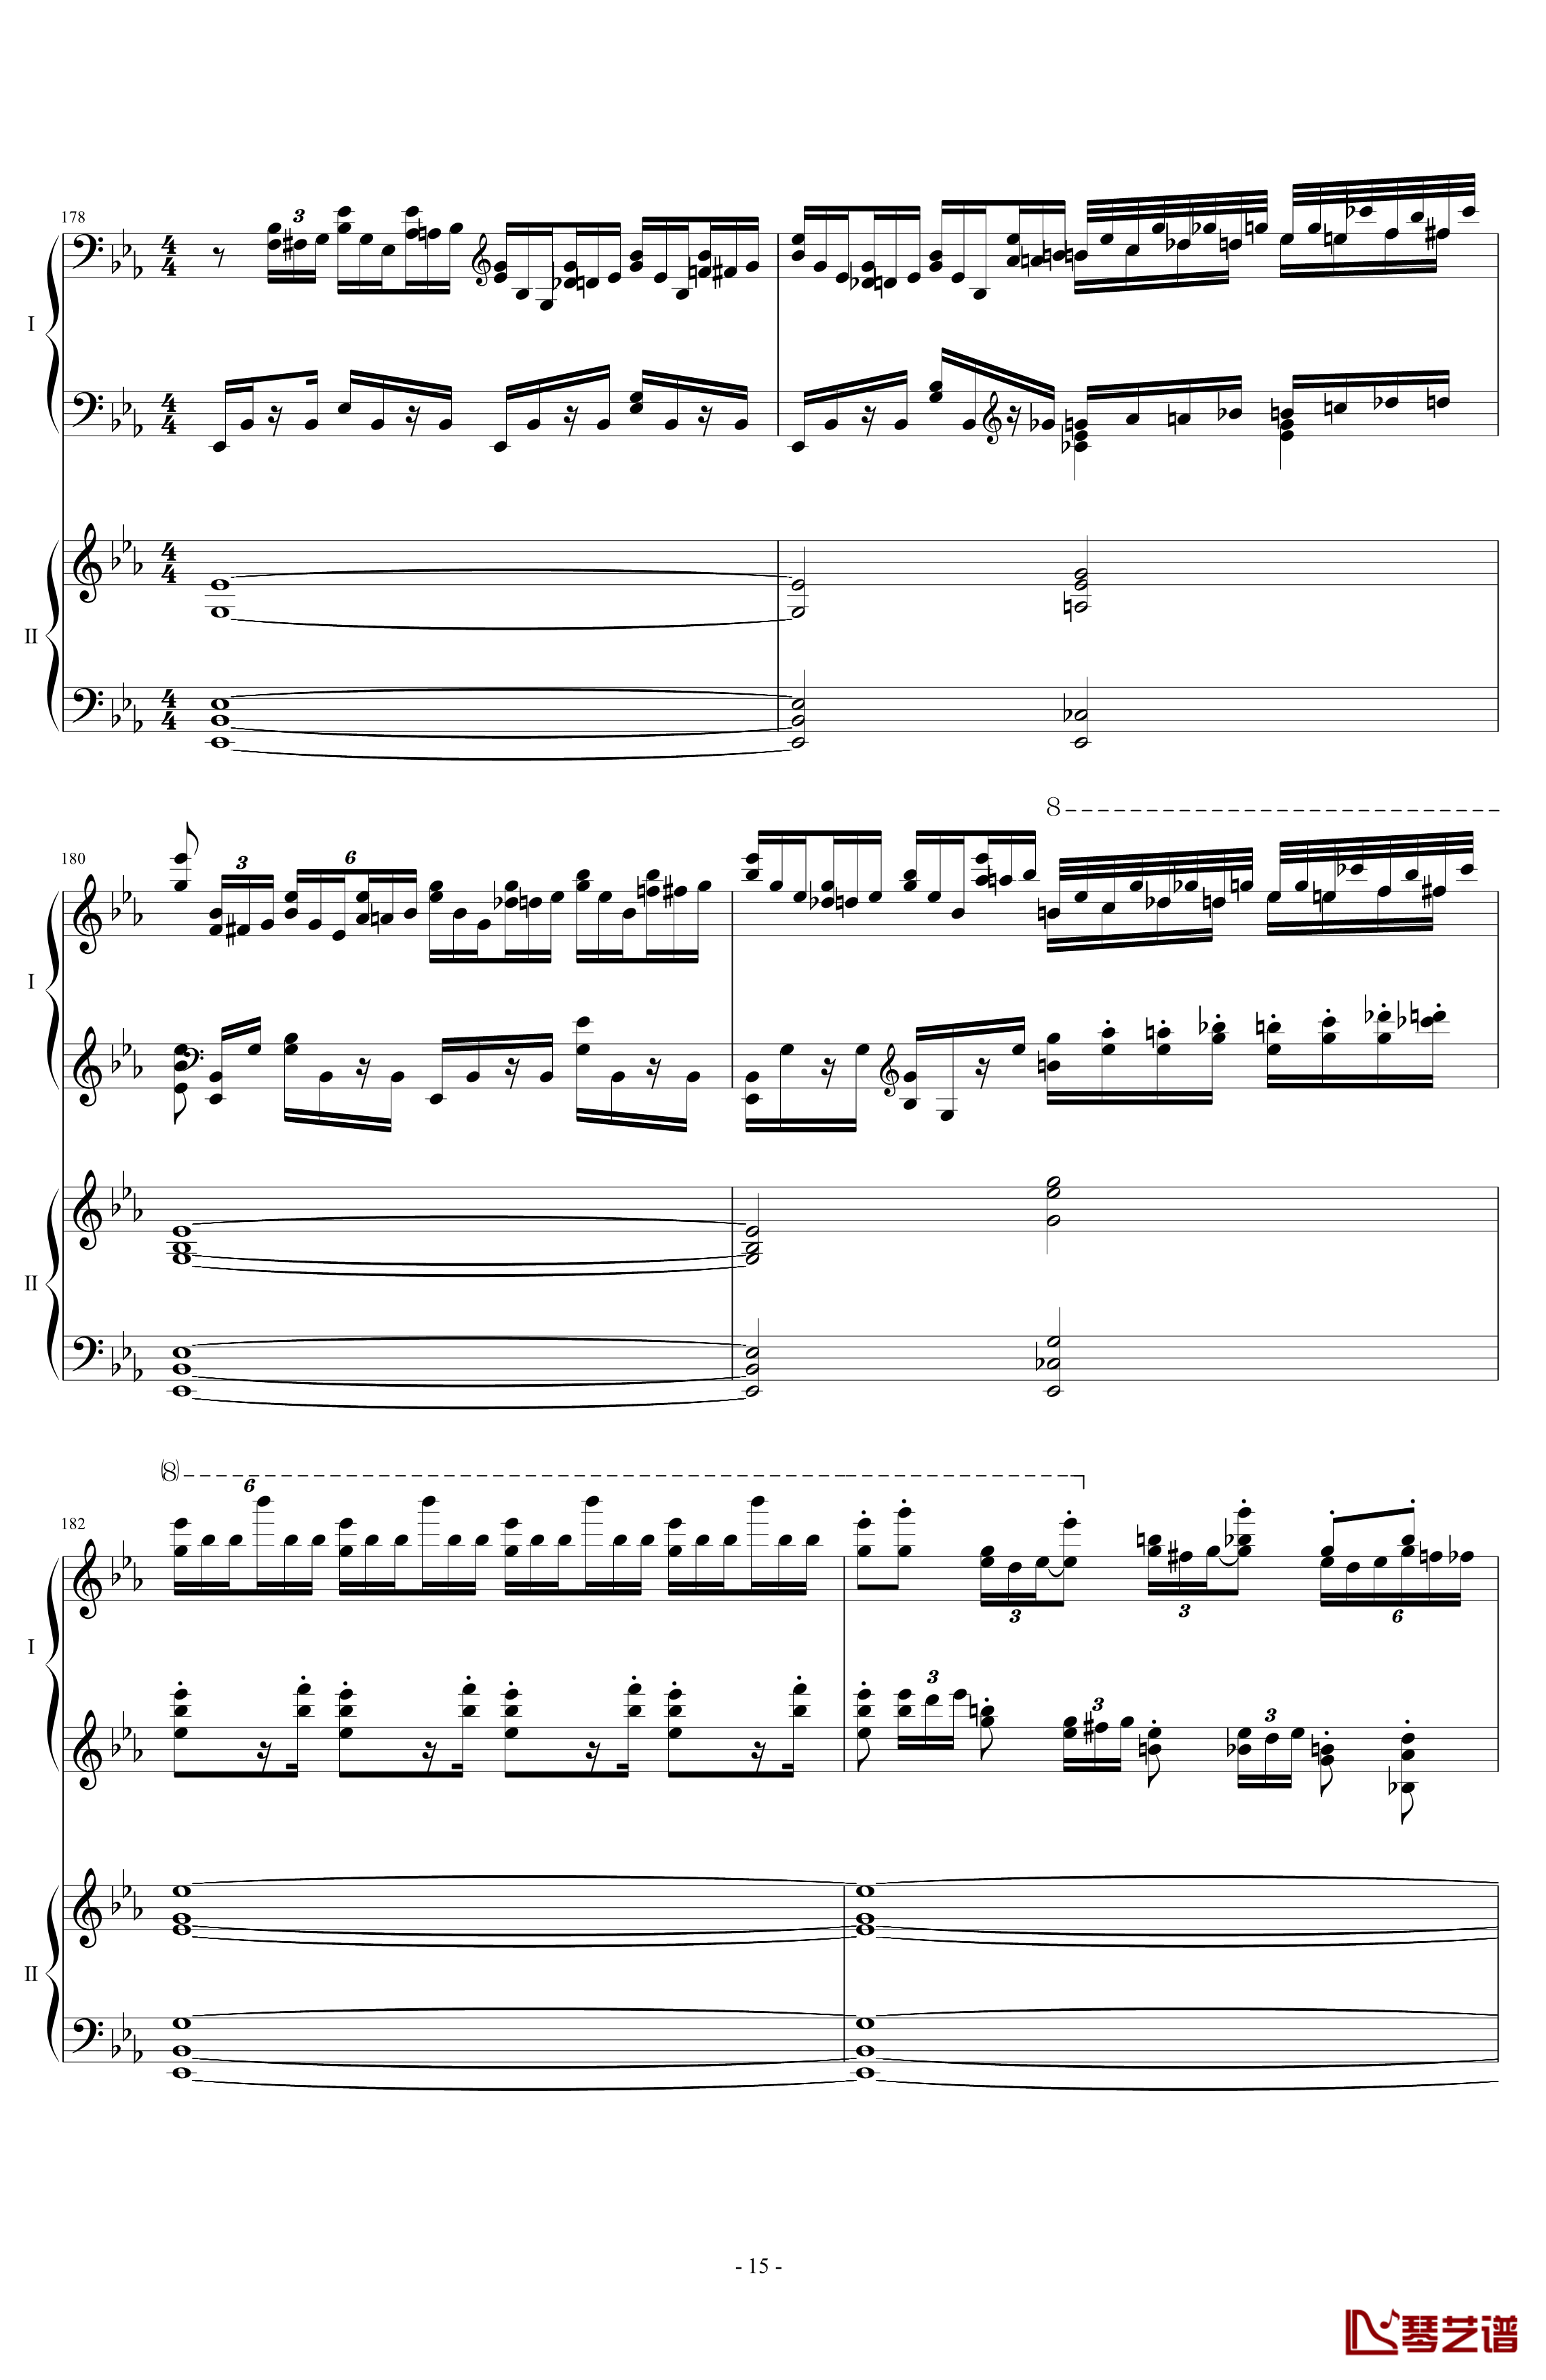 拉三第三乐章41页双钢琴钢琴谱-最难钢琴曲-拉赫马尼若夫15